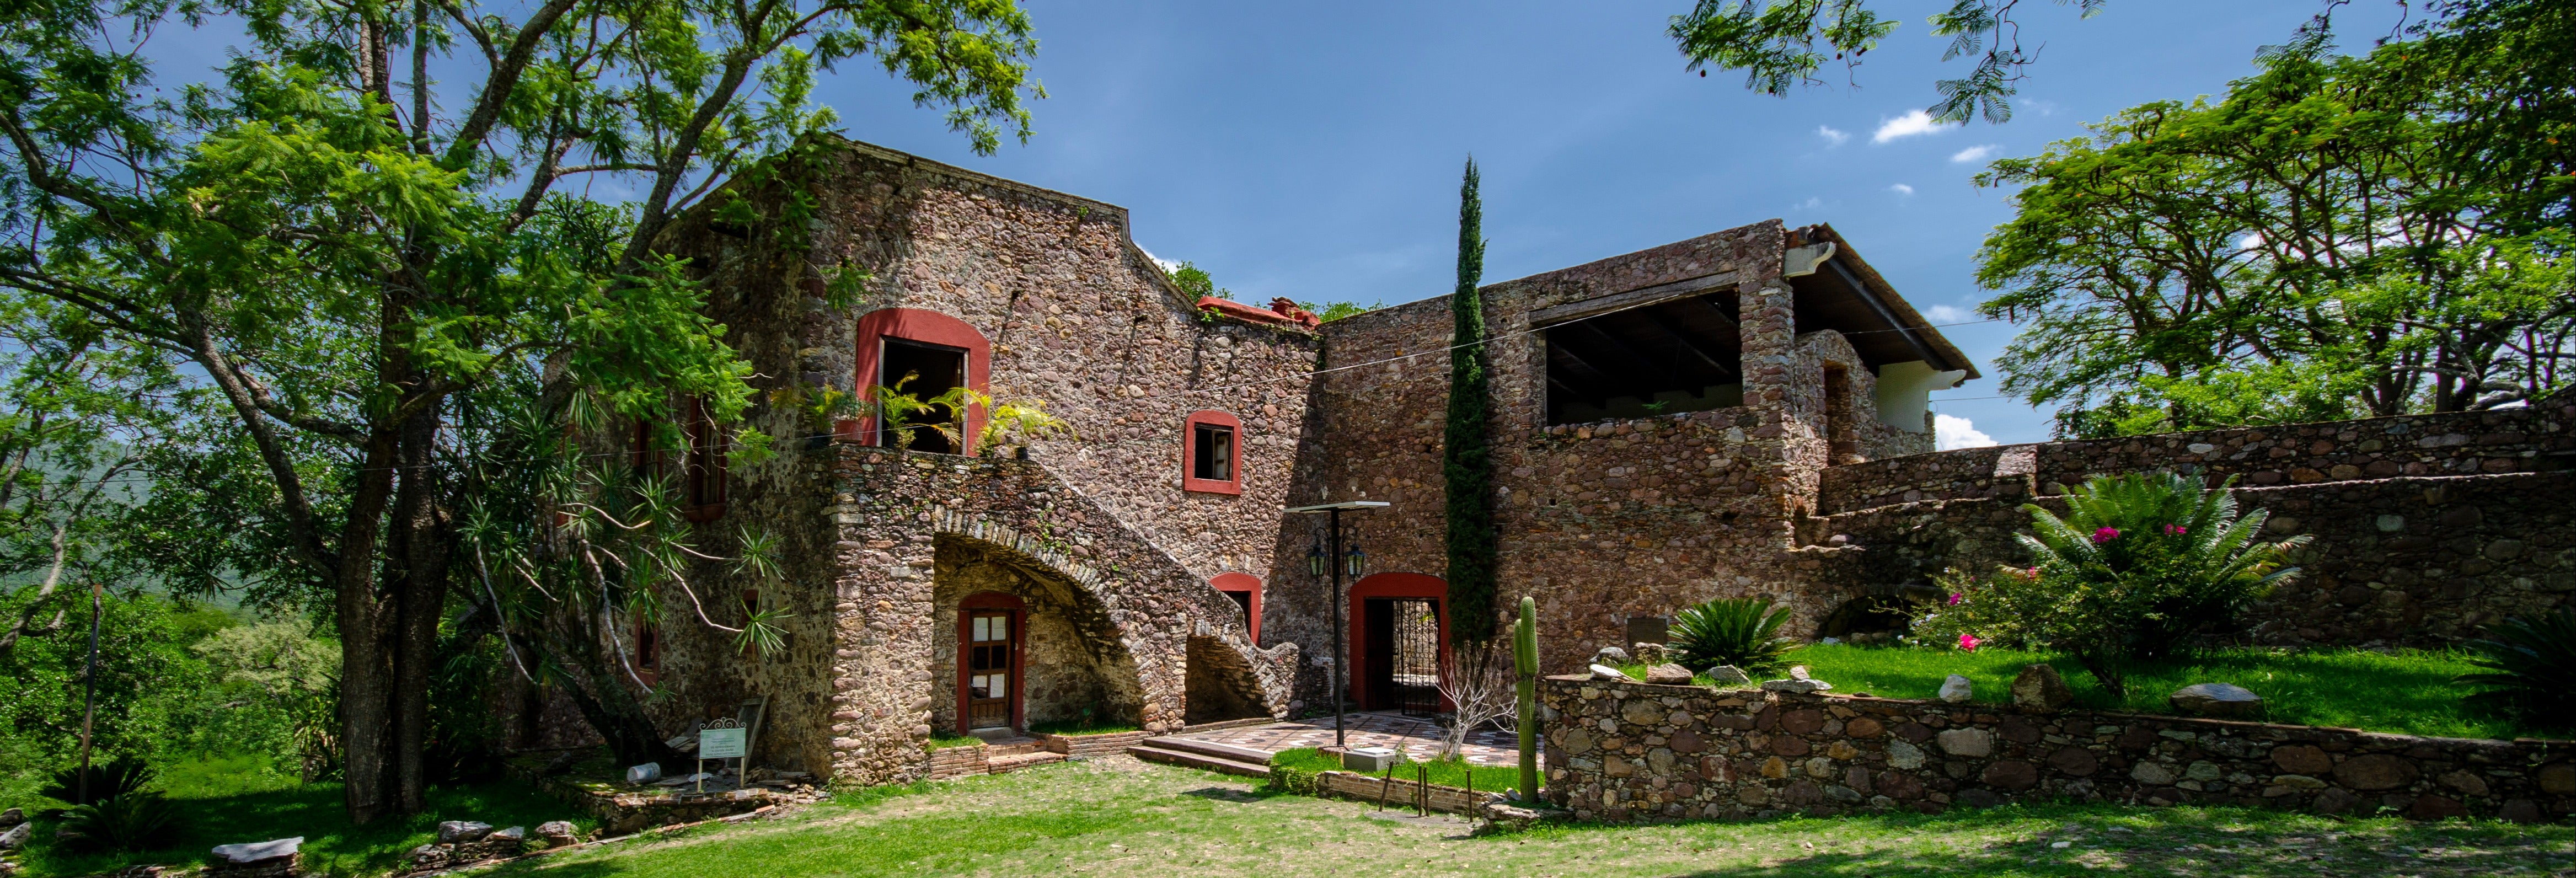 Ex-Hacienda of San Juan Bautista Excursion